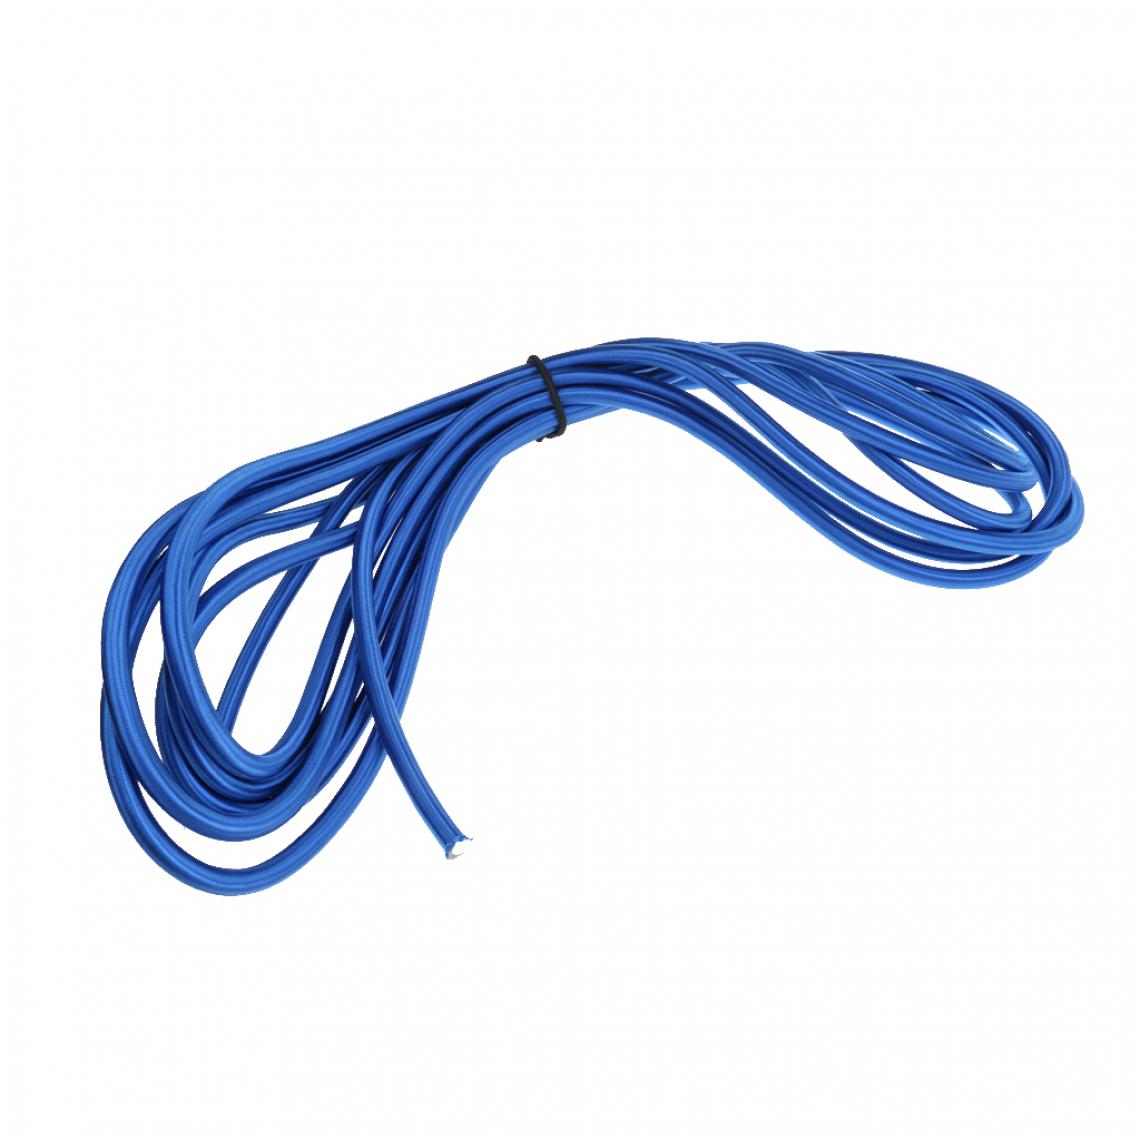 marque generique - 12mm x 10m Sandow Elastique Corde Elastique Durable Longue Durée Pour Enfants Saut de Trampoline Bleu - Accessoires et Pièces Détachées